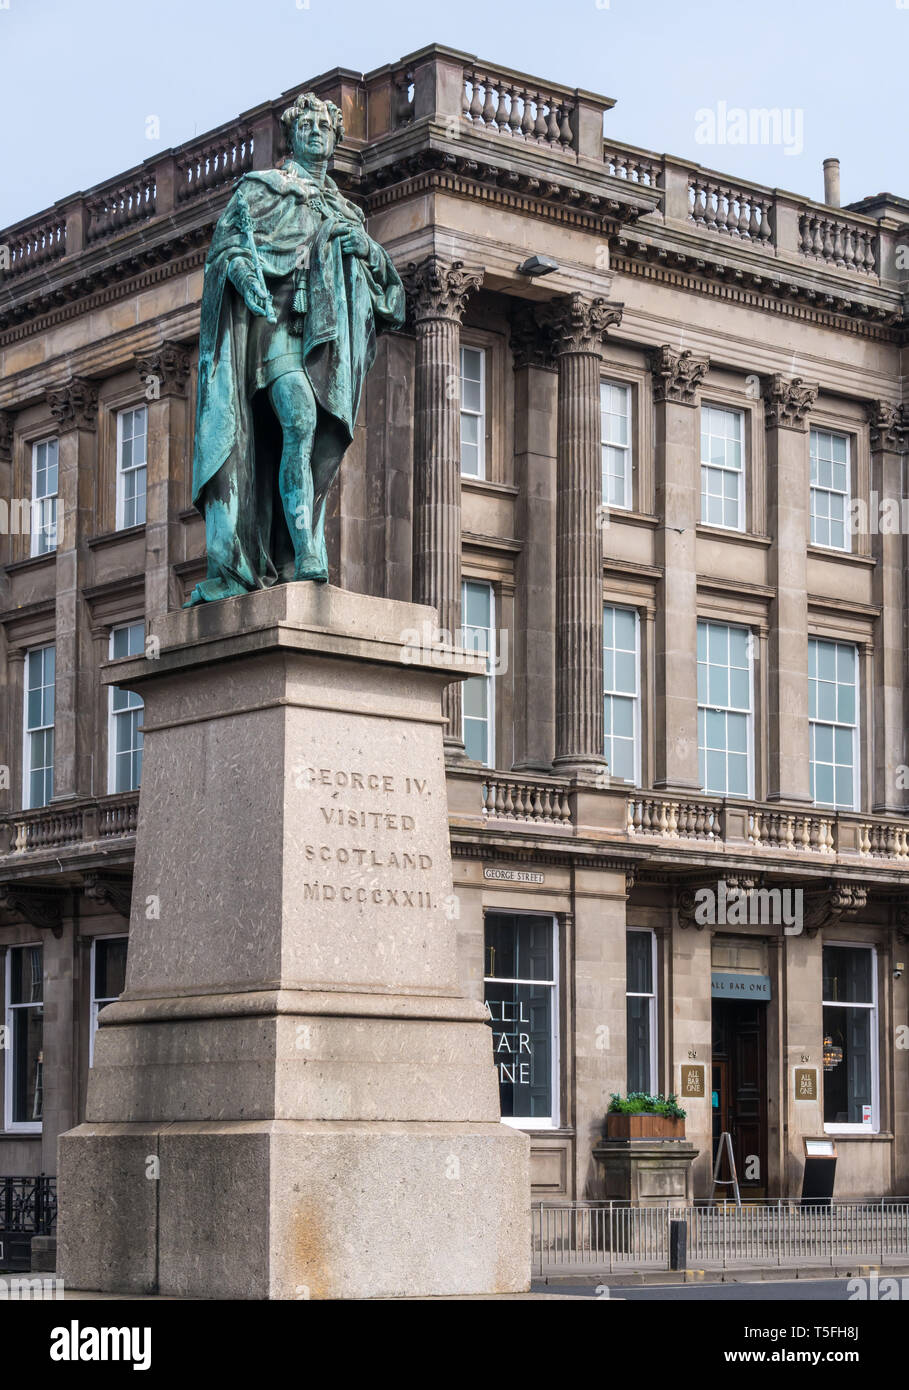 Statue en bronze du roi George IV sur socle par Sir John Steell, George Street, Édimbourg Ville Nouvelle, Écosse, Royaume-Uni Banque D'Images